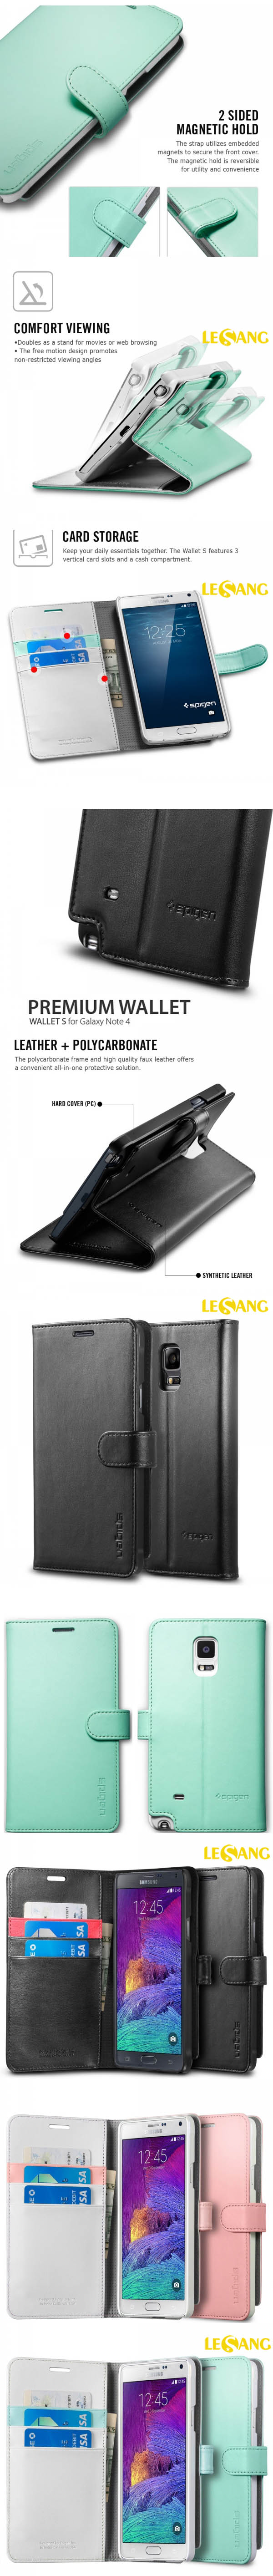 Bao da Galaxy Note 4 SGP Wallet S (USA) 333